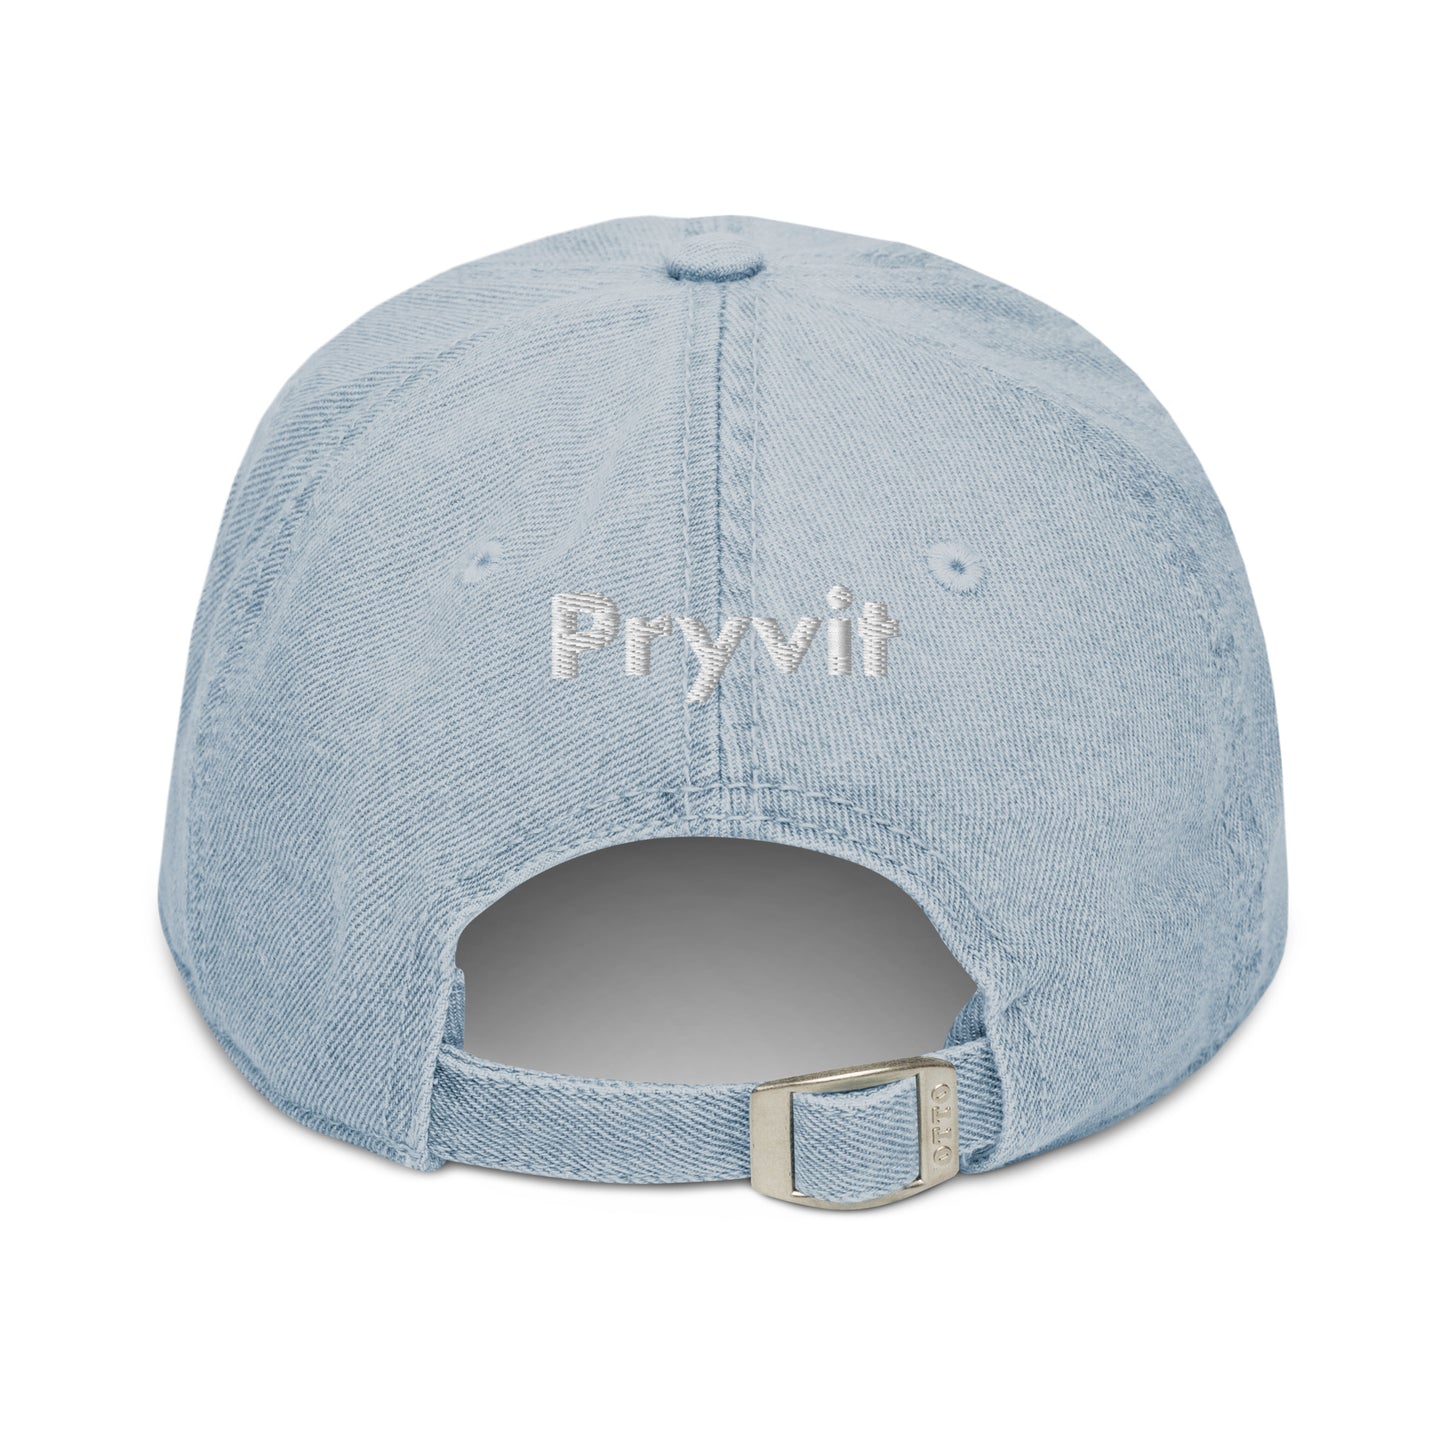 Hi Pryvit Denim Hat